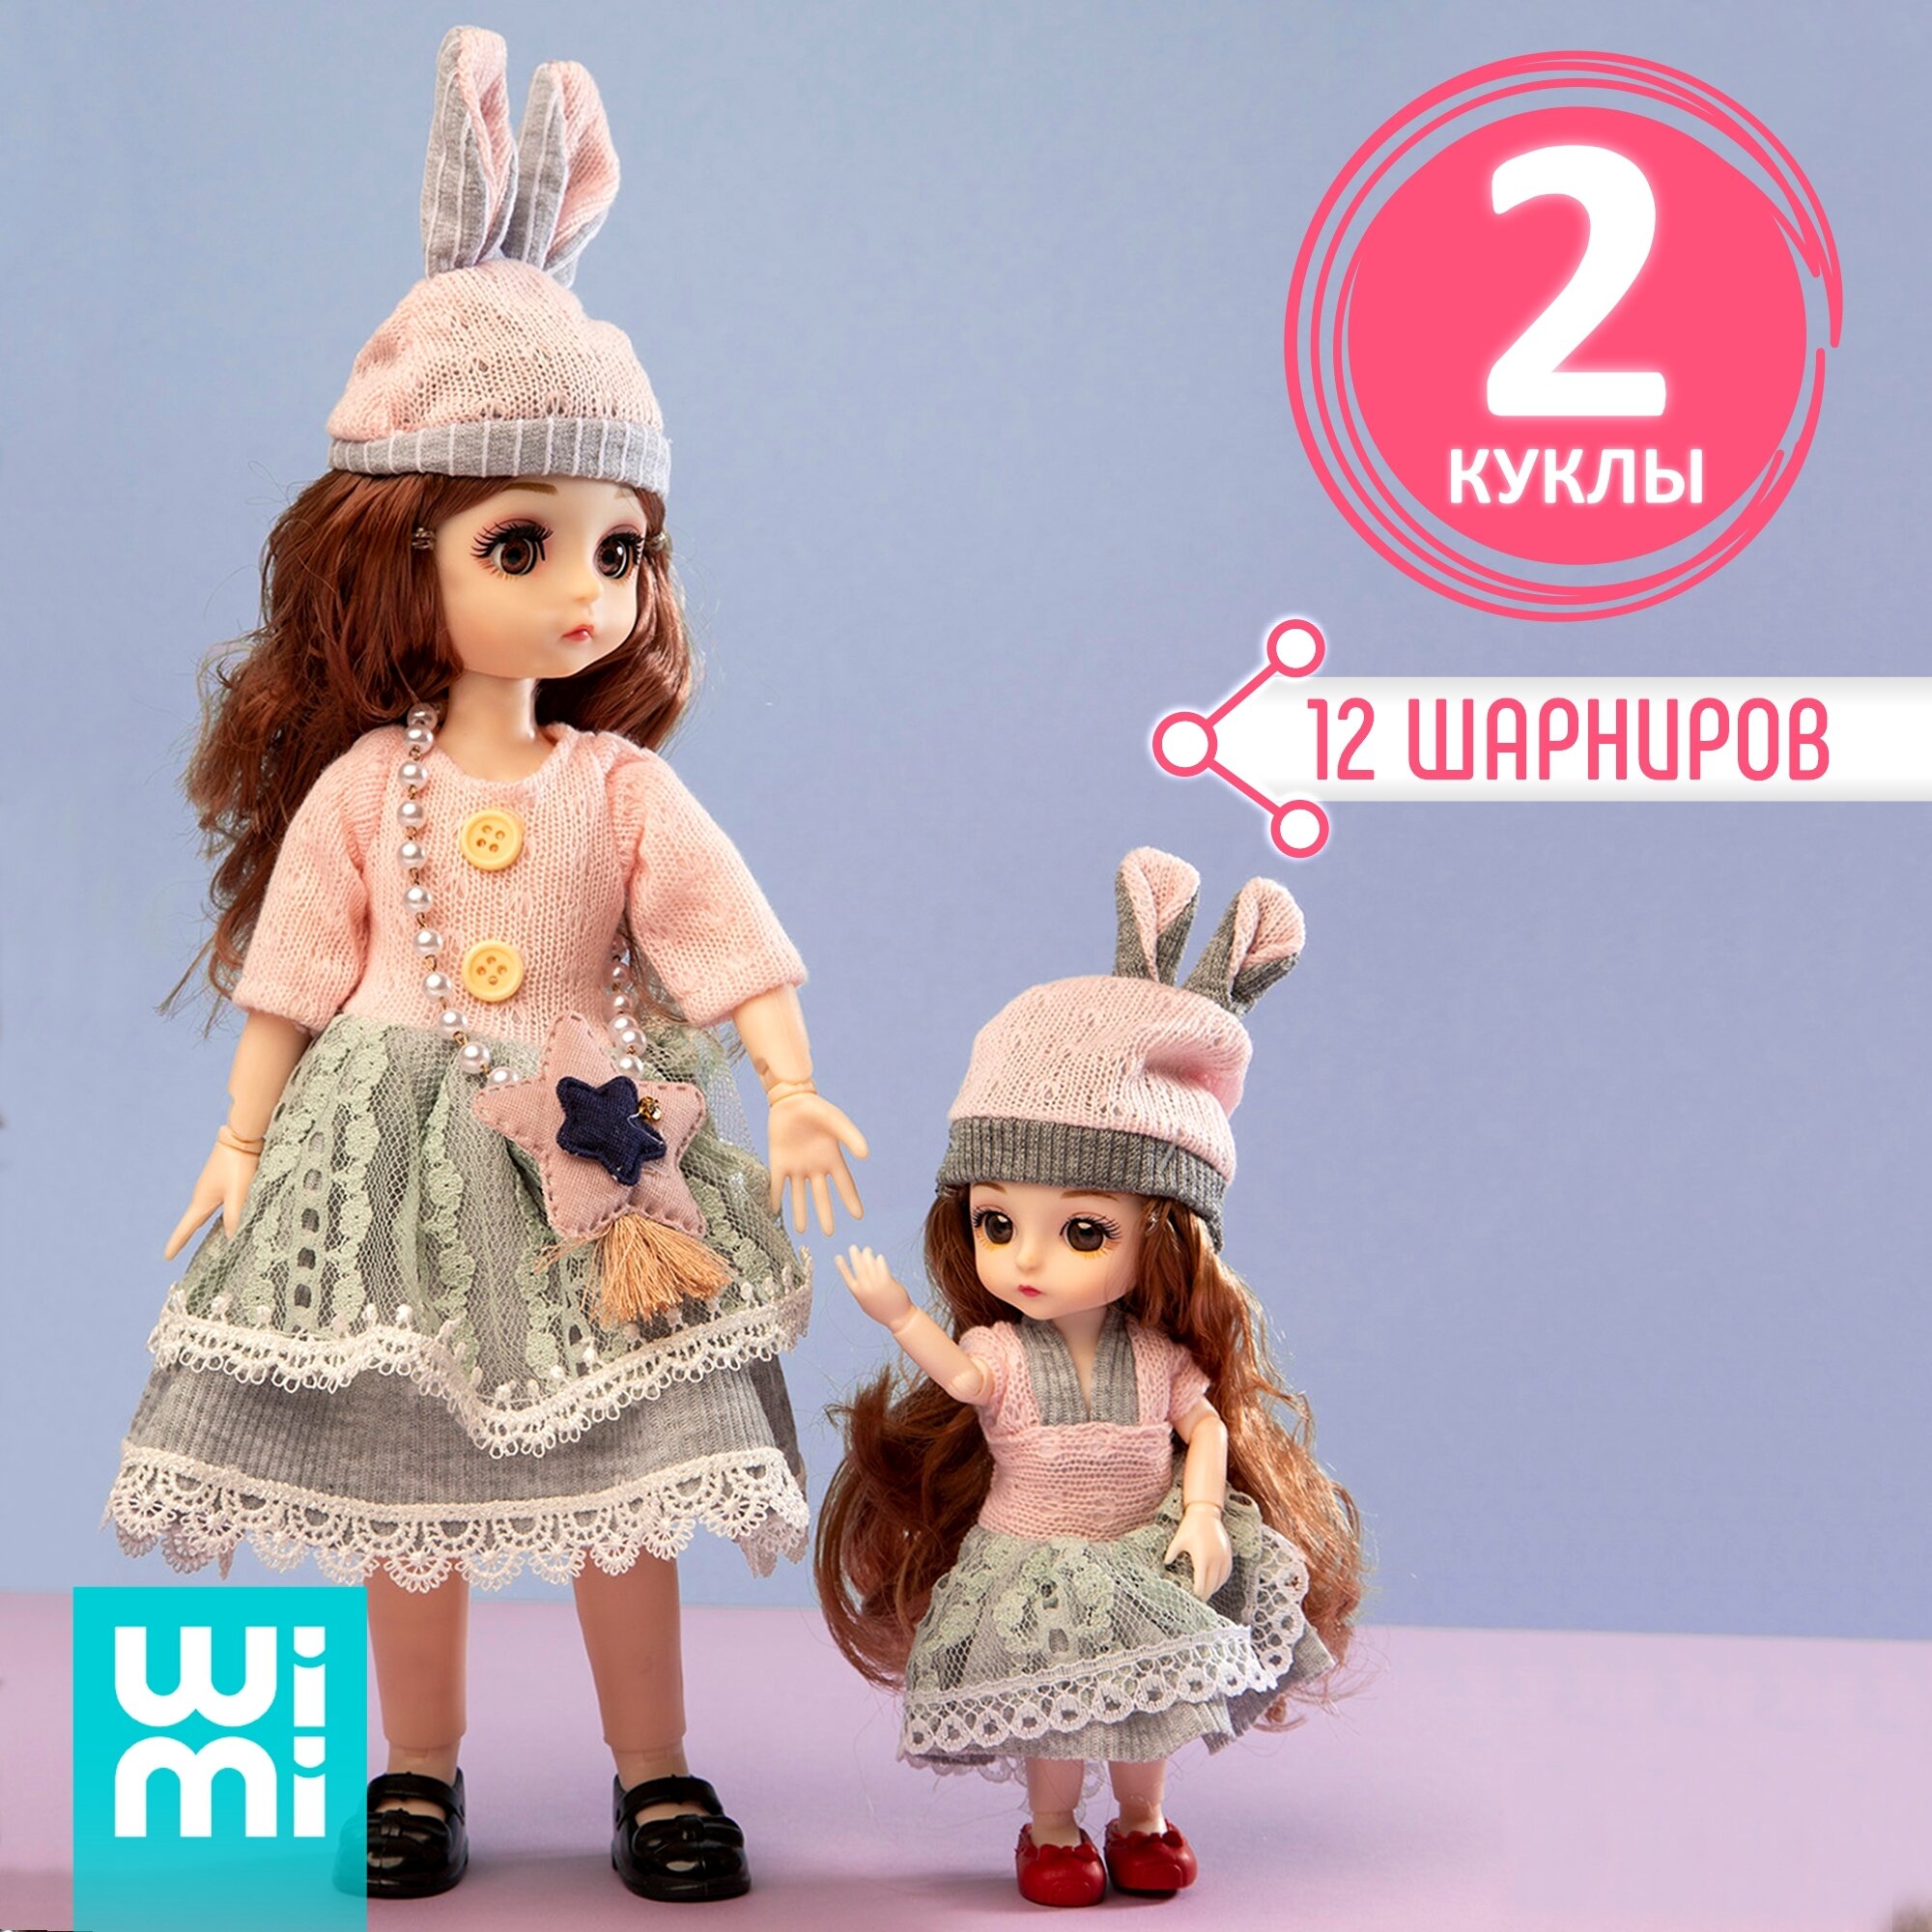 Коллекционный набор кукол WiMi, интерьерные игрушки для украшения дома, шарнирные куклы принцессы с длинными волосами для причёсок, БЖД кукла с одеждой и аксессуарами